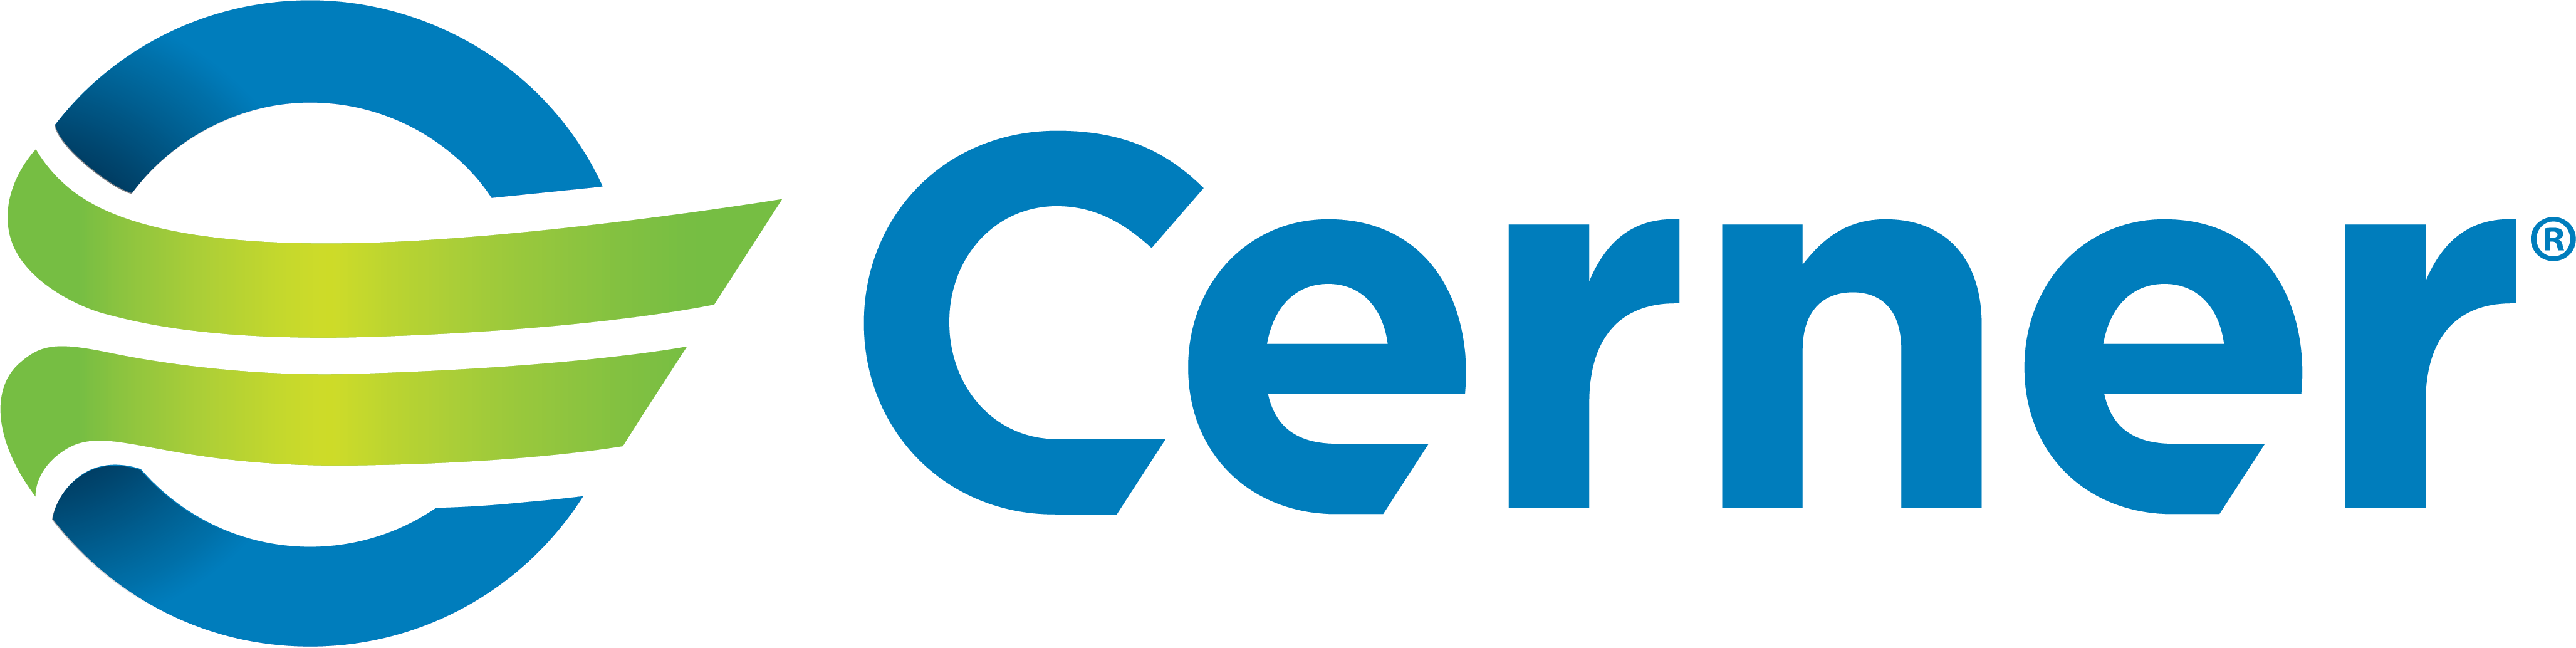 Cerner Government Services